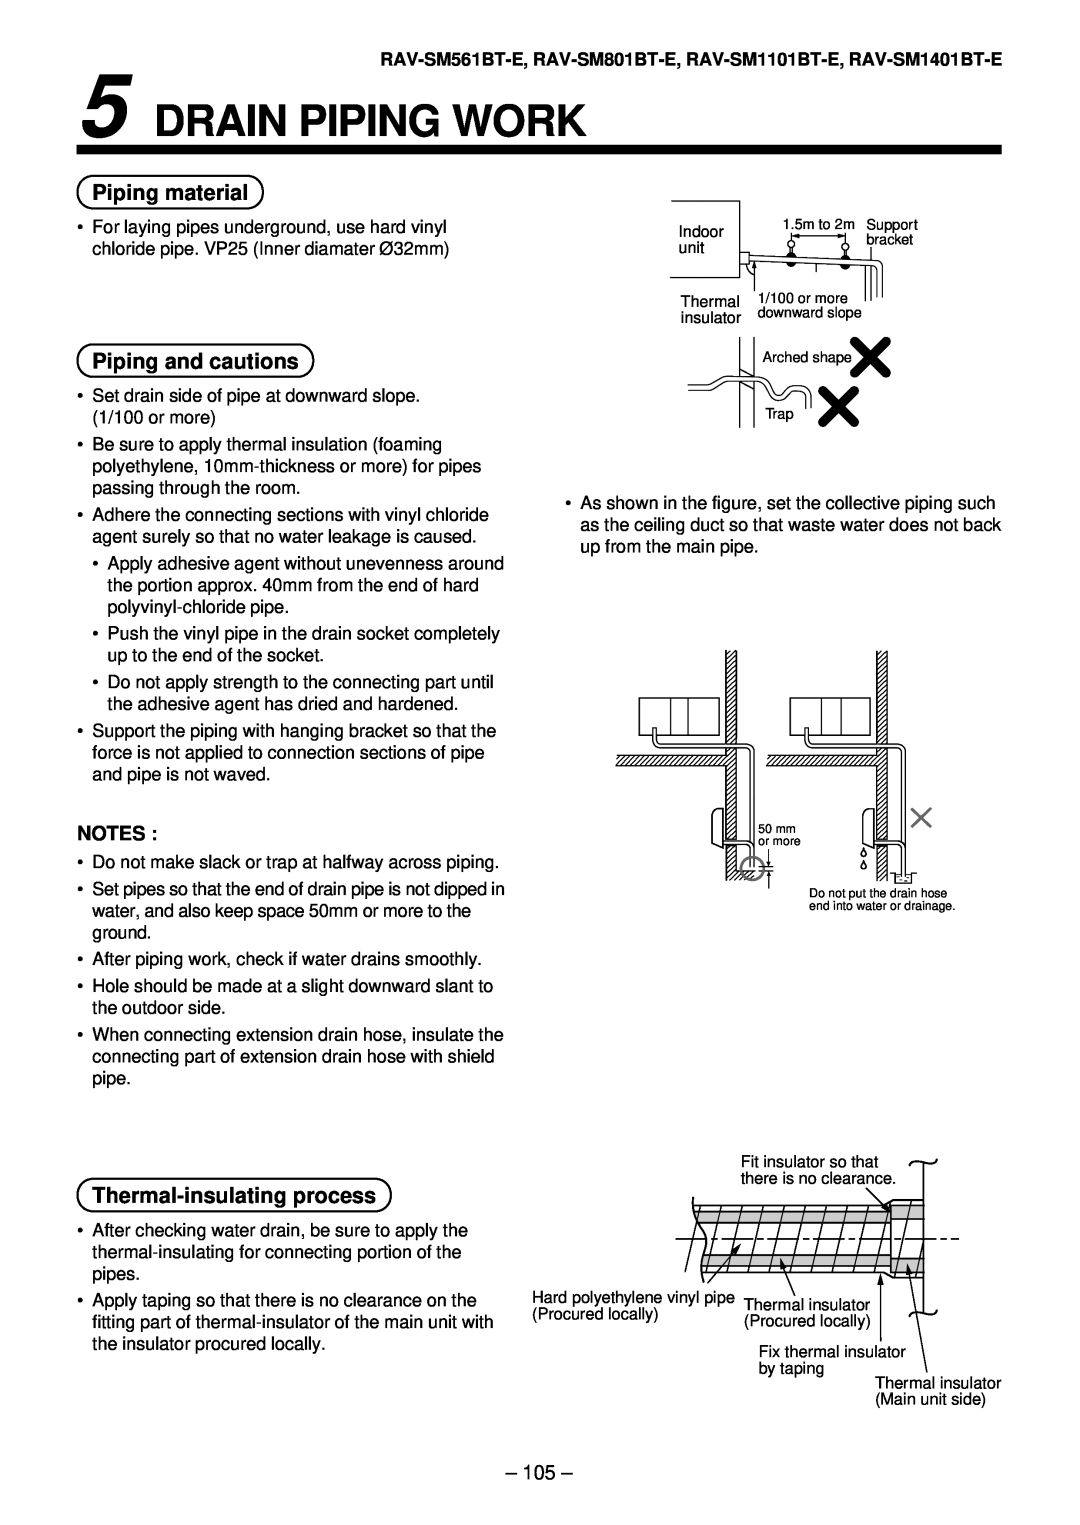 Toshiba RAV-SM1401AT-E, RAV-SM1101AT-E Drain Piping Work, Piping material, Piping and cautions, Thermal-insulating process 